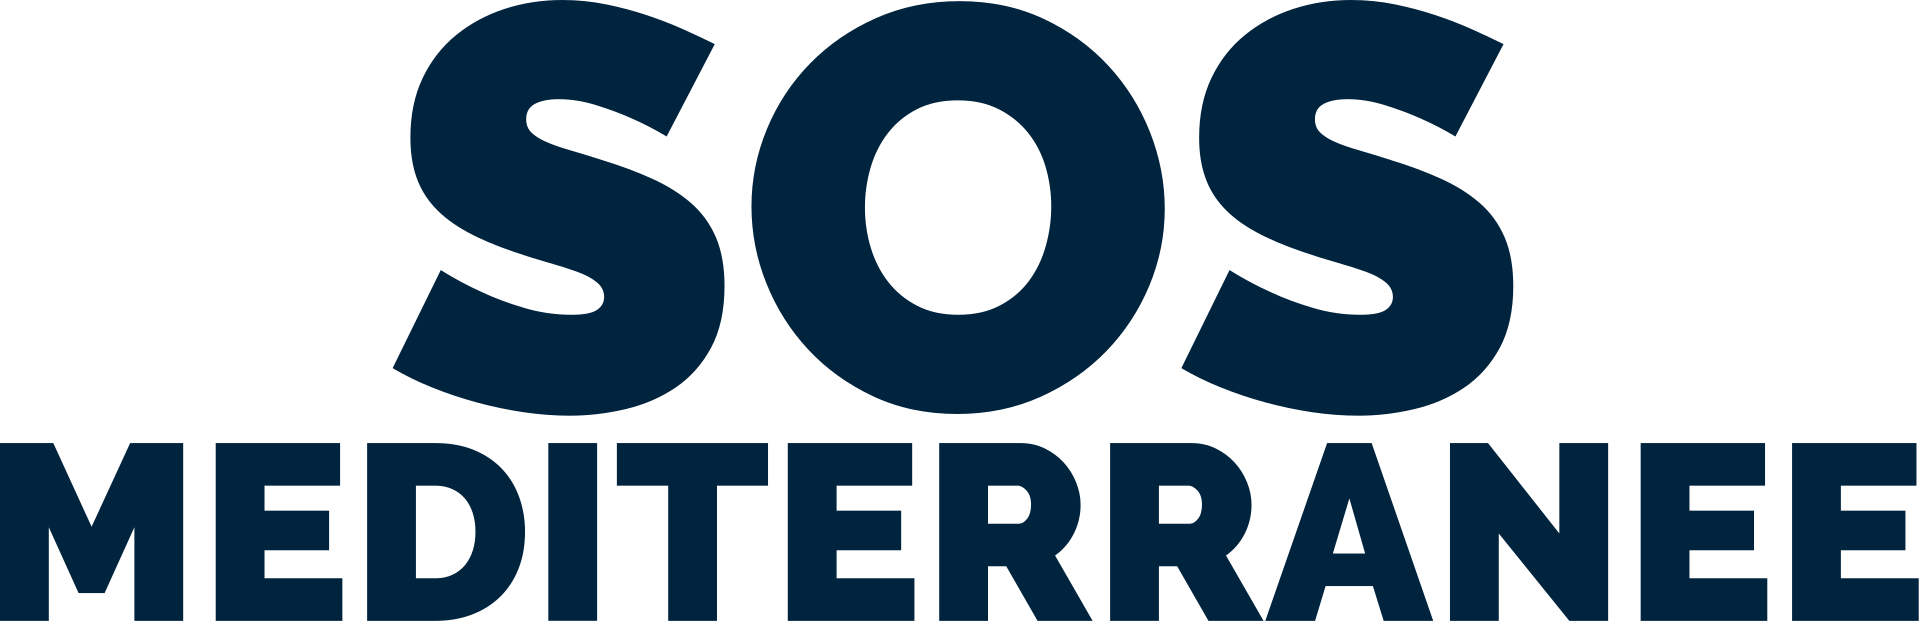 SOS MEDITERRANEE